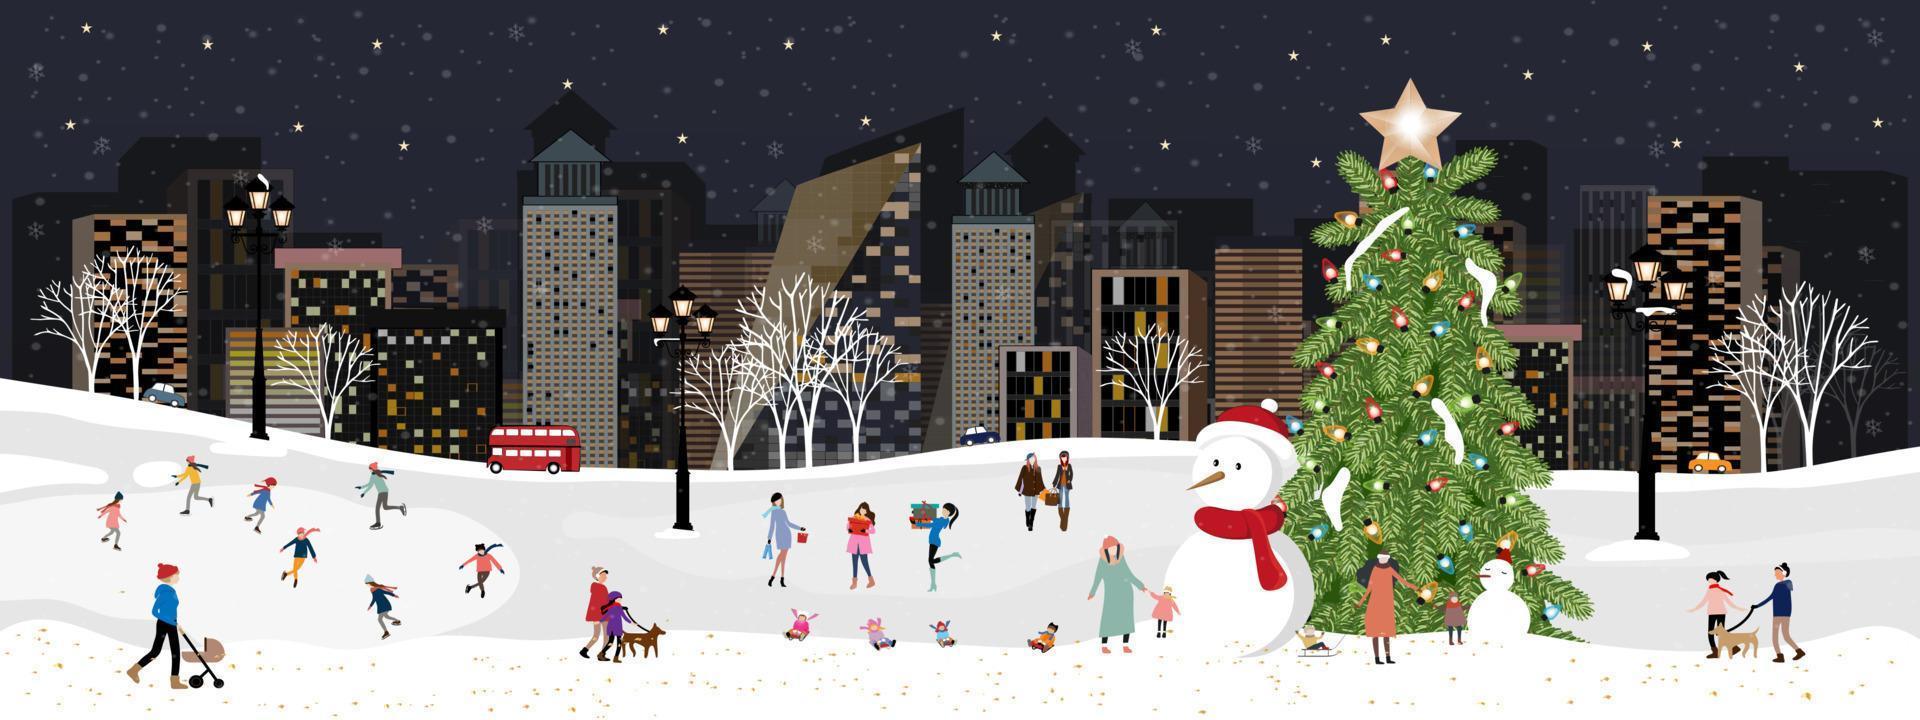 paysage de ville d'hiver les gens célèbrent la nuit de noël ou le nouvel an, bannière horizontale vectorielle pays des merveilles d'hiver dans la ville avec des enfants heureux faisant de la luge et jouant des patins à glace dans le parc vecteur